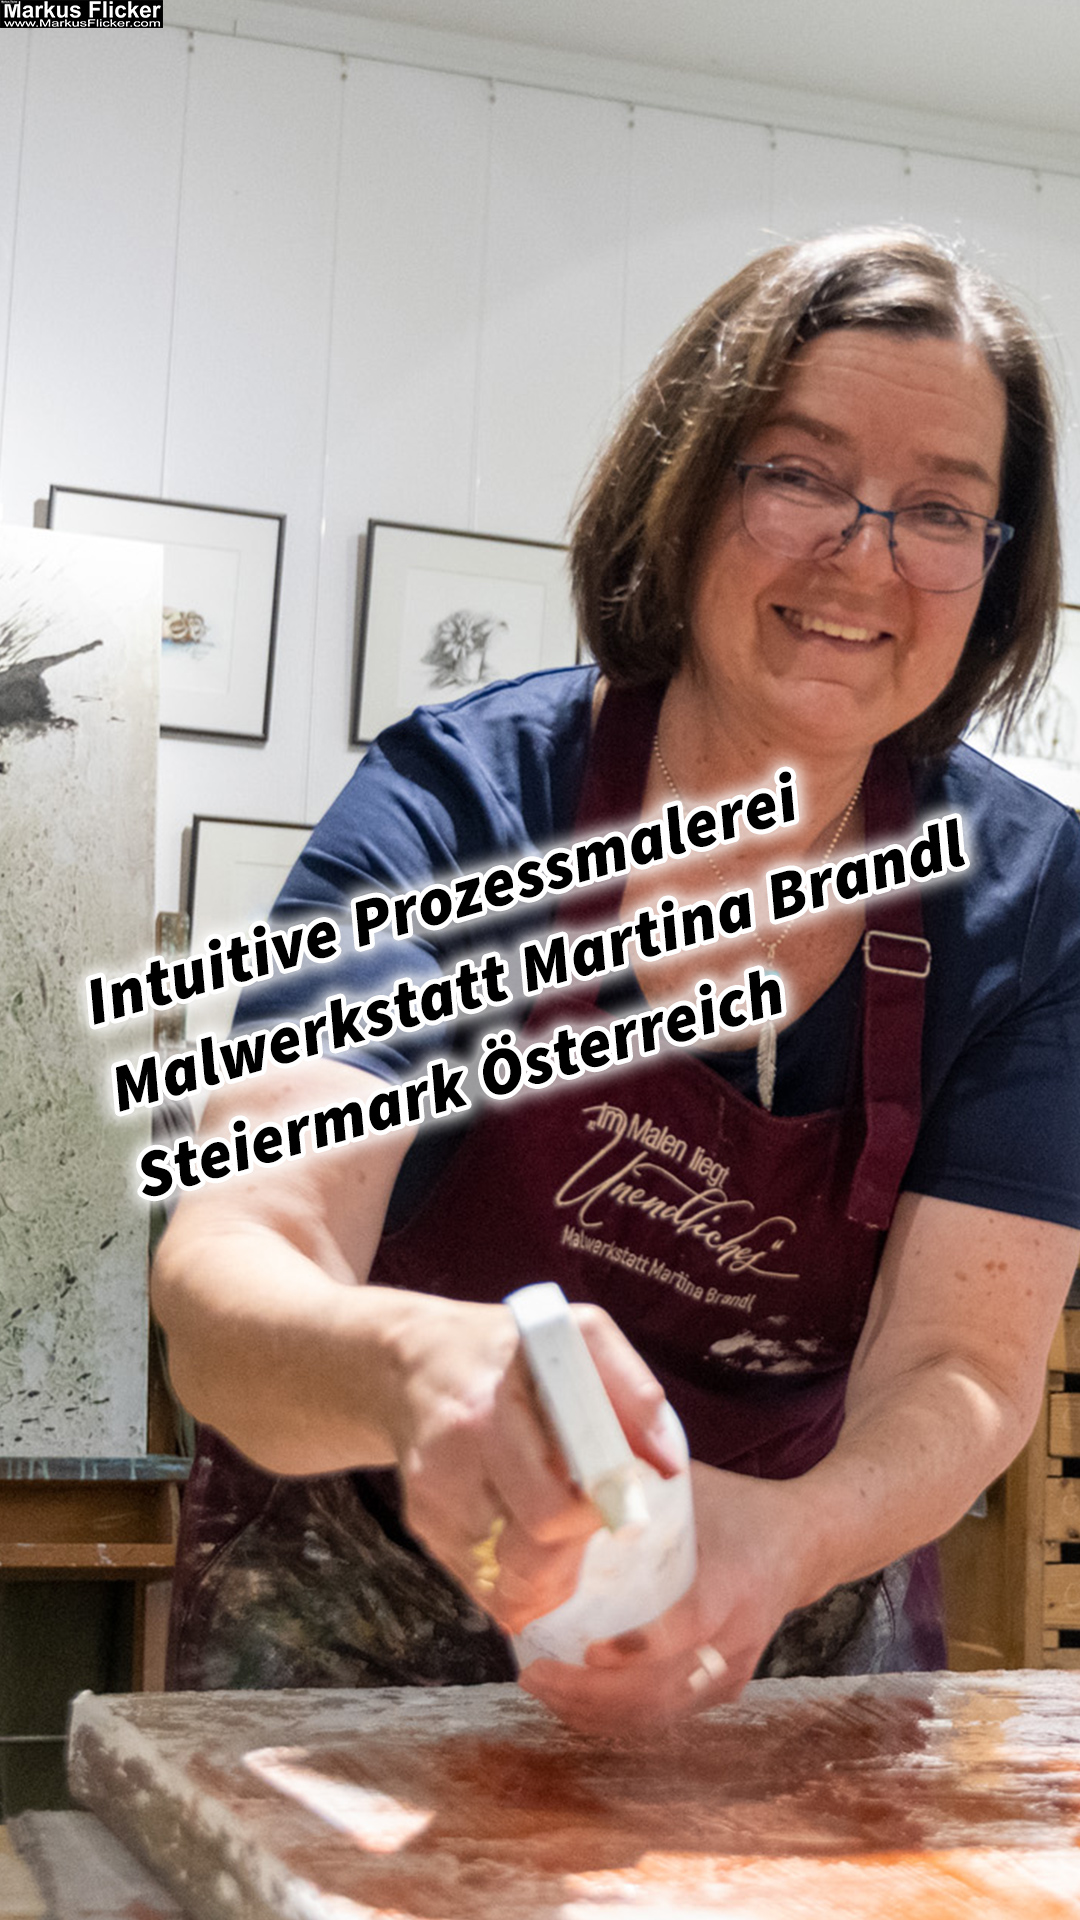 Intuitive Prozessmalerei Malwerkstatt Martina Brandl Steiermark Österreich